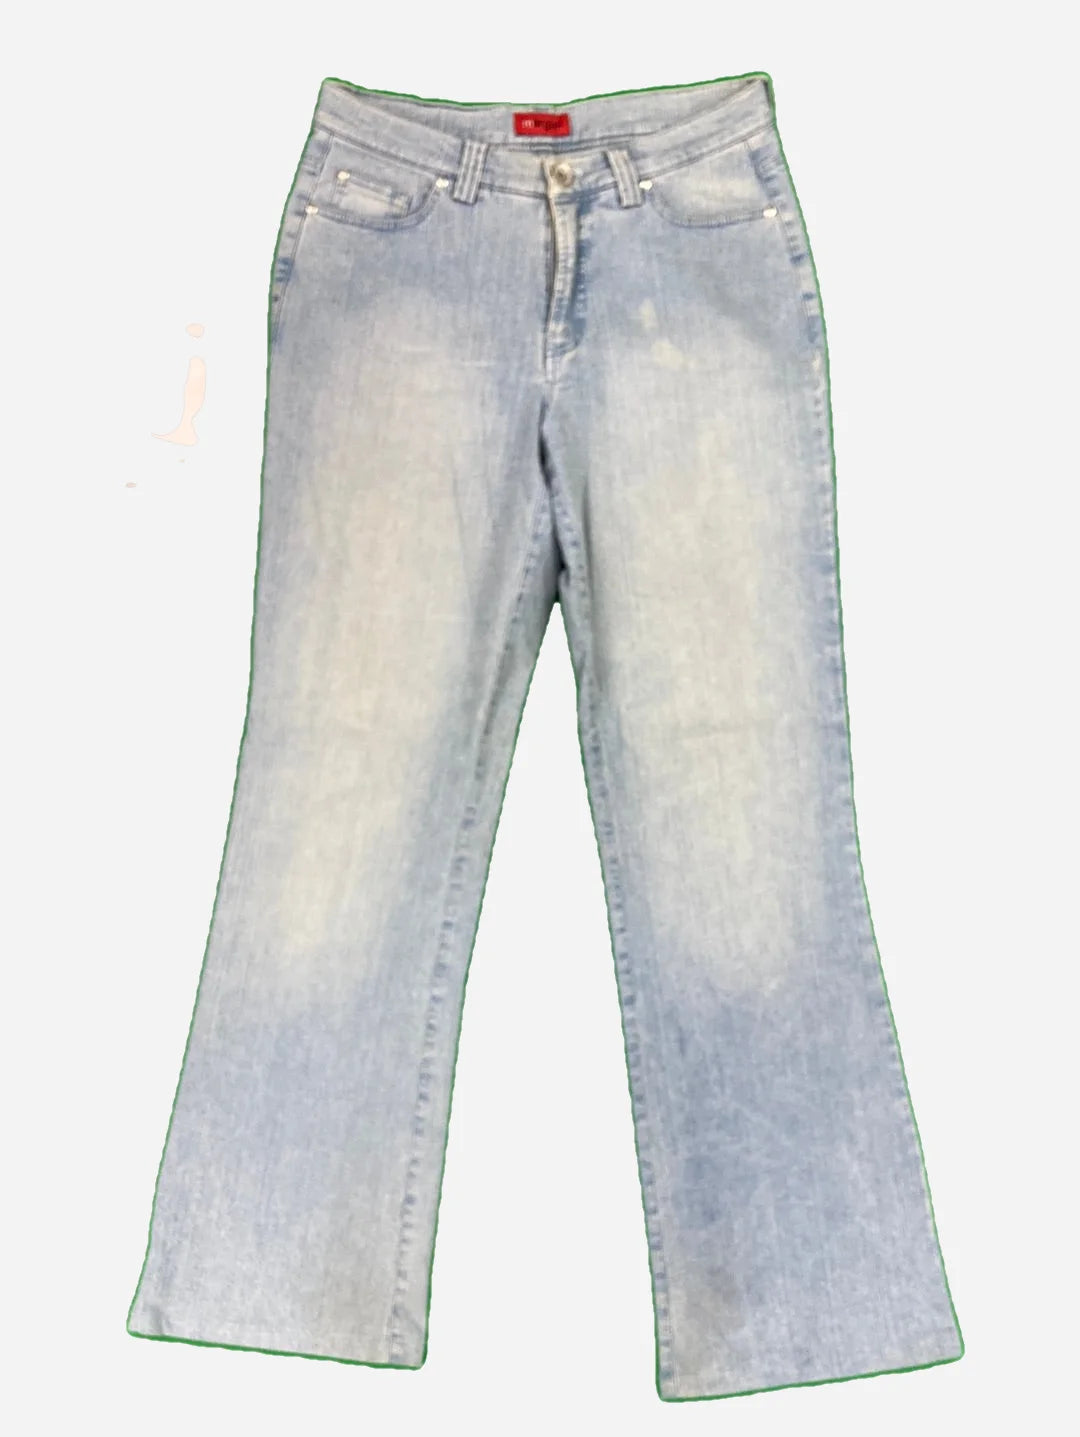 mergler Jeans 31/32 (L)